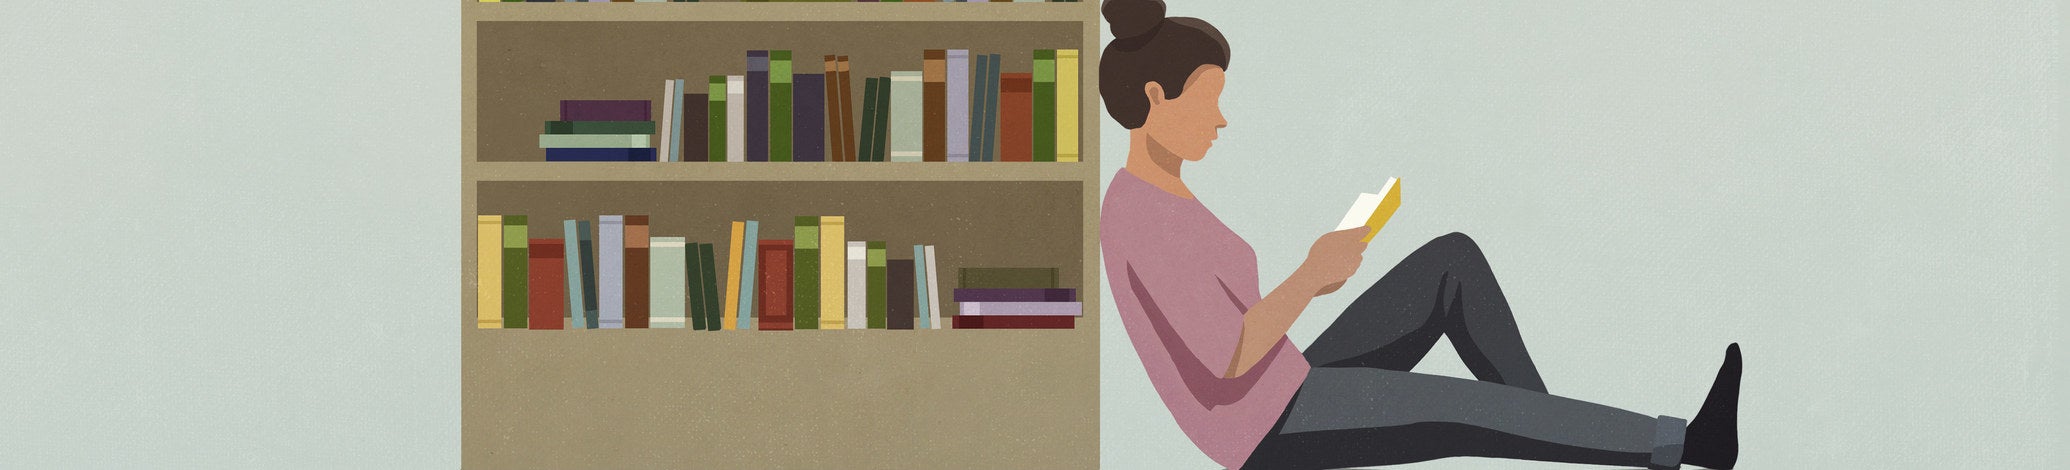 Ilustração de uma estante de livros, com uma pessoa de coque encostada ao lado da estante, lendo um livro.